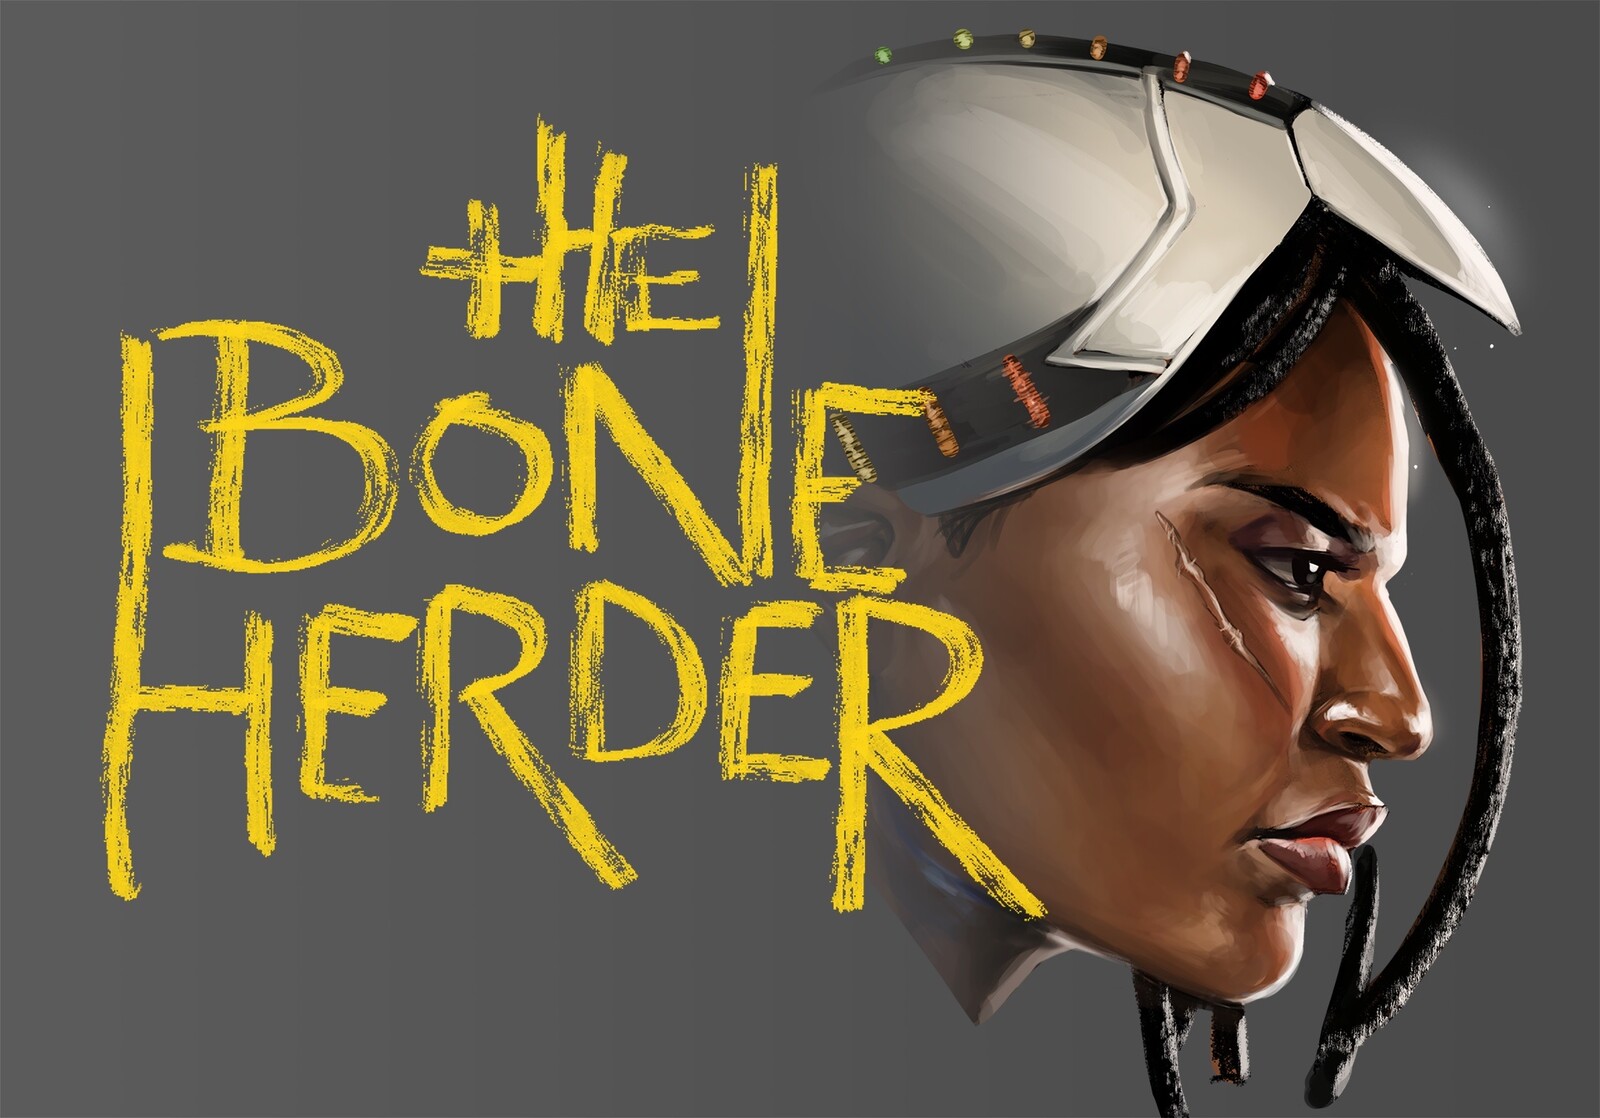 The Bone Herder